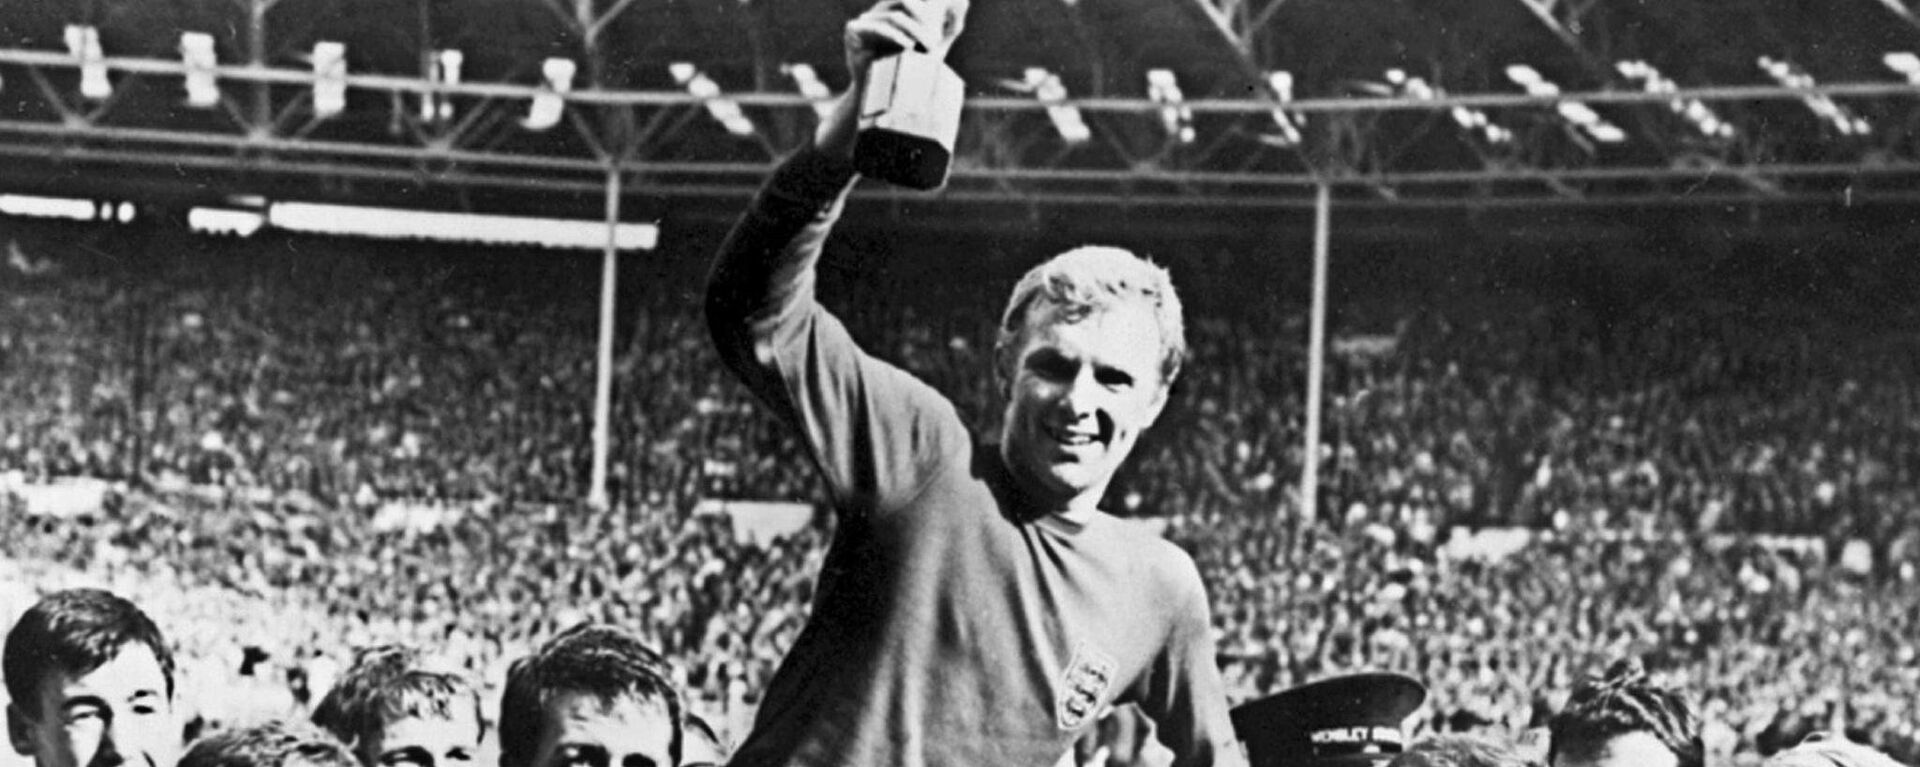 Капитан Бобби Мур держит в руках кубок после победы Англии над Германией (4-2 в дополнительное время) в финале Кубка мира 30 июля 1966 года на стадионе Уэмбли в Лондоне - Sputnik Грузия, 1920, 27.04.2018